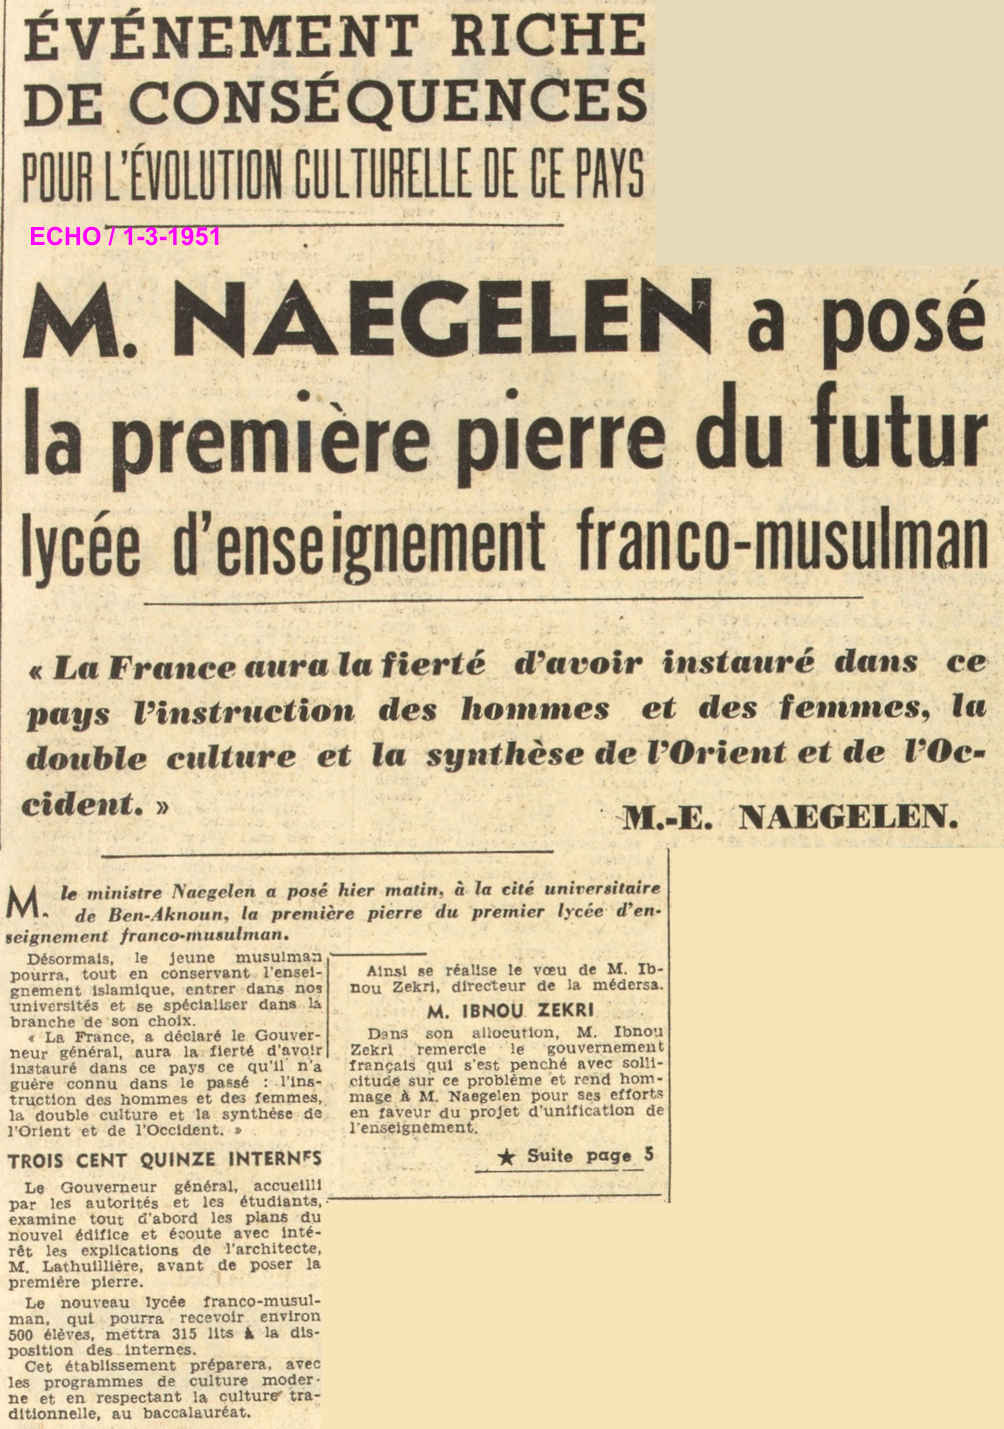 M. NAEGELEN a posé la première pierre du futur lycée d'enseignement franco musulman